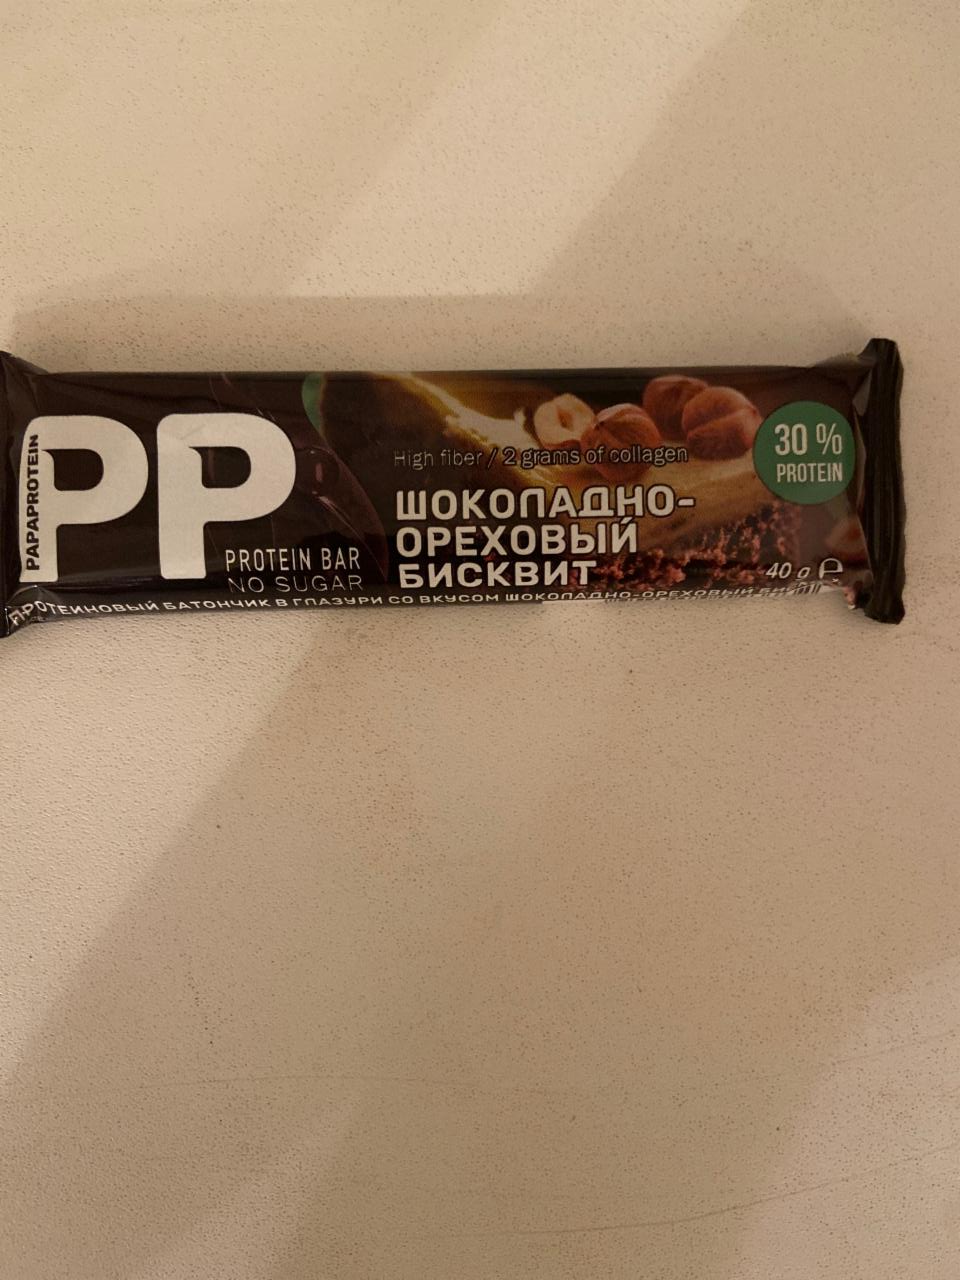 Фото - Батончик шоколадно-ореховый бисквит Papaprotein PP